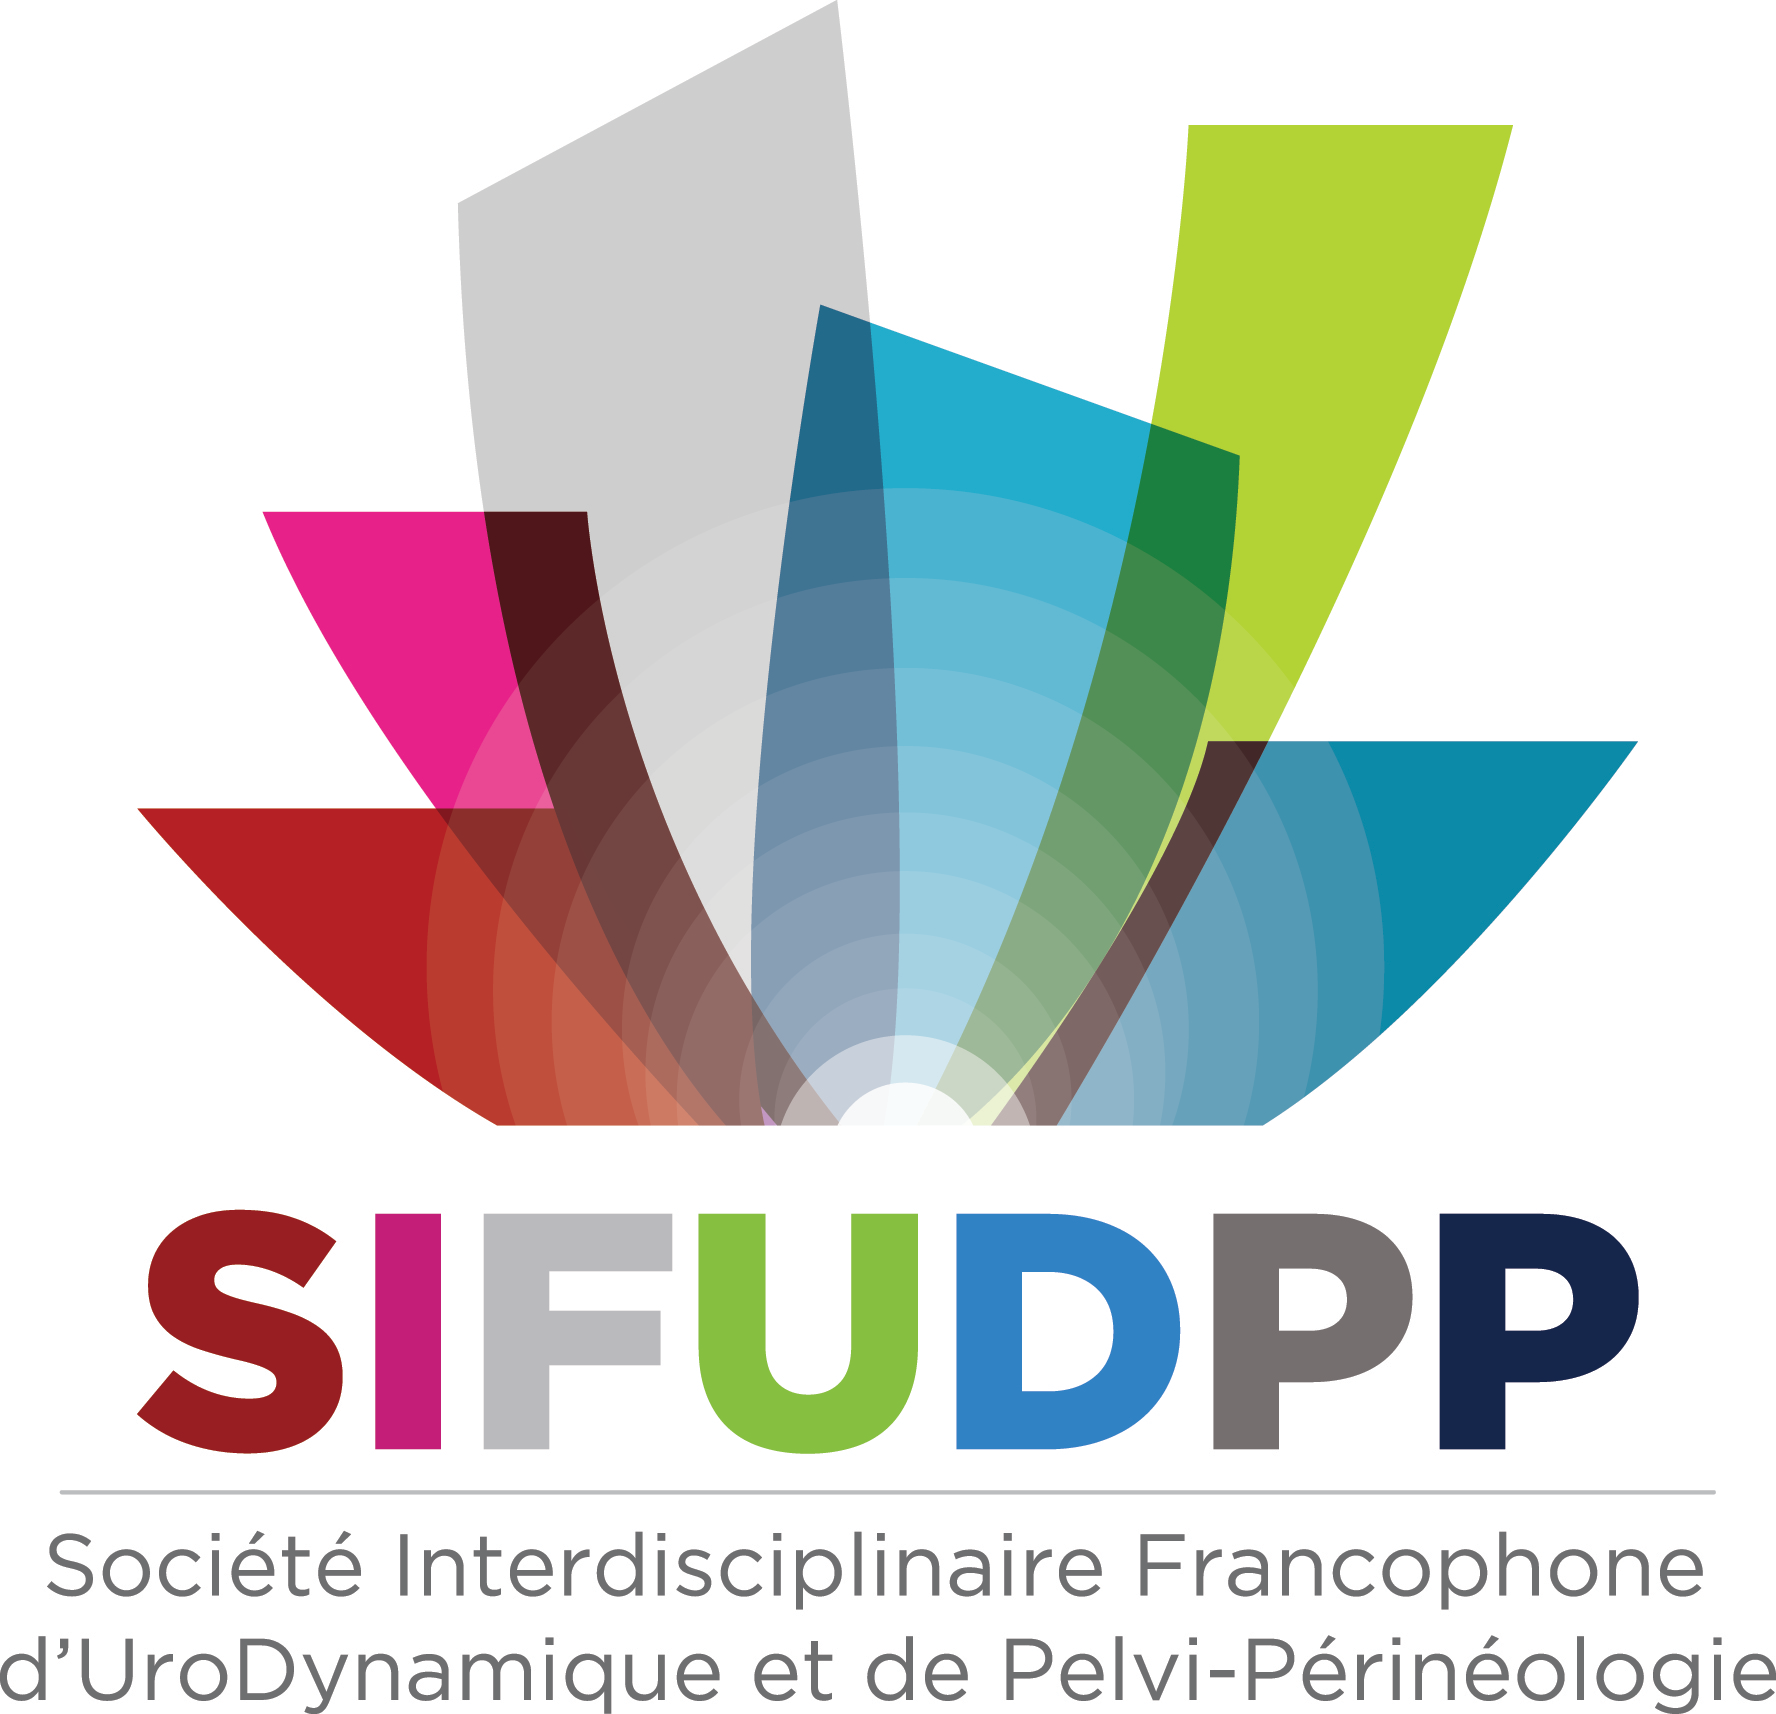 SIFUD-PP Paris 2016 : Utiliser un renforcement prothétique après 80 ans est-il raisonnable ?